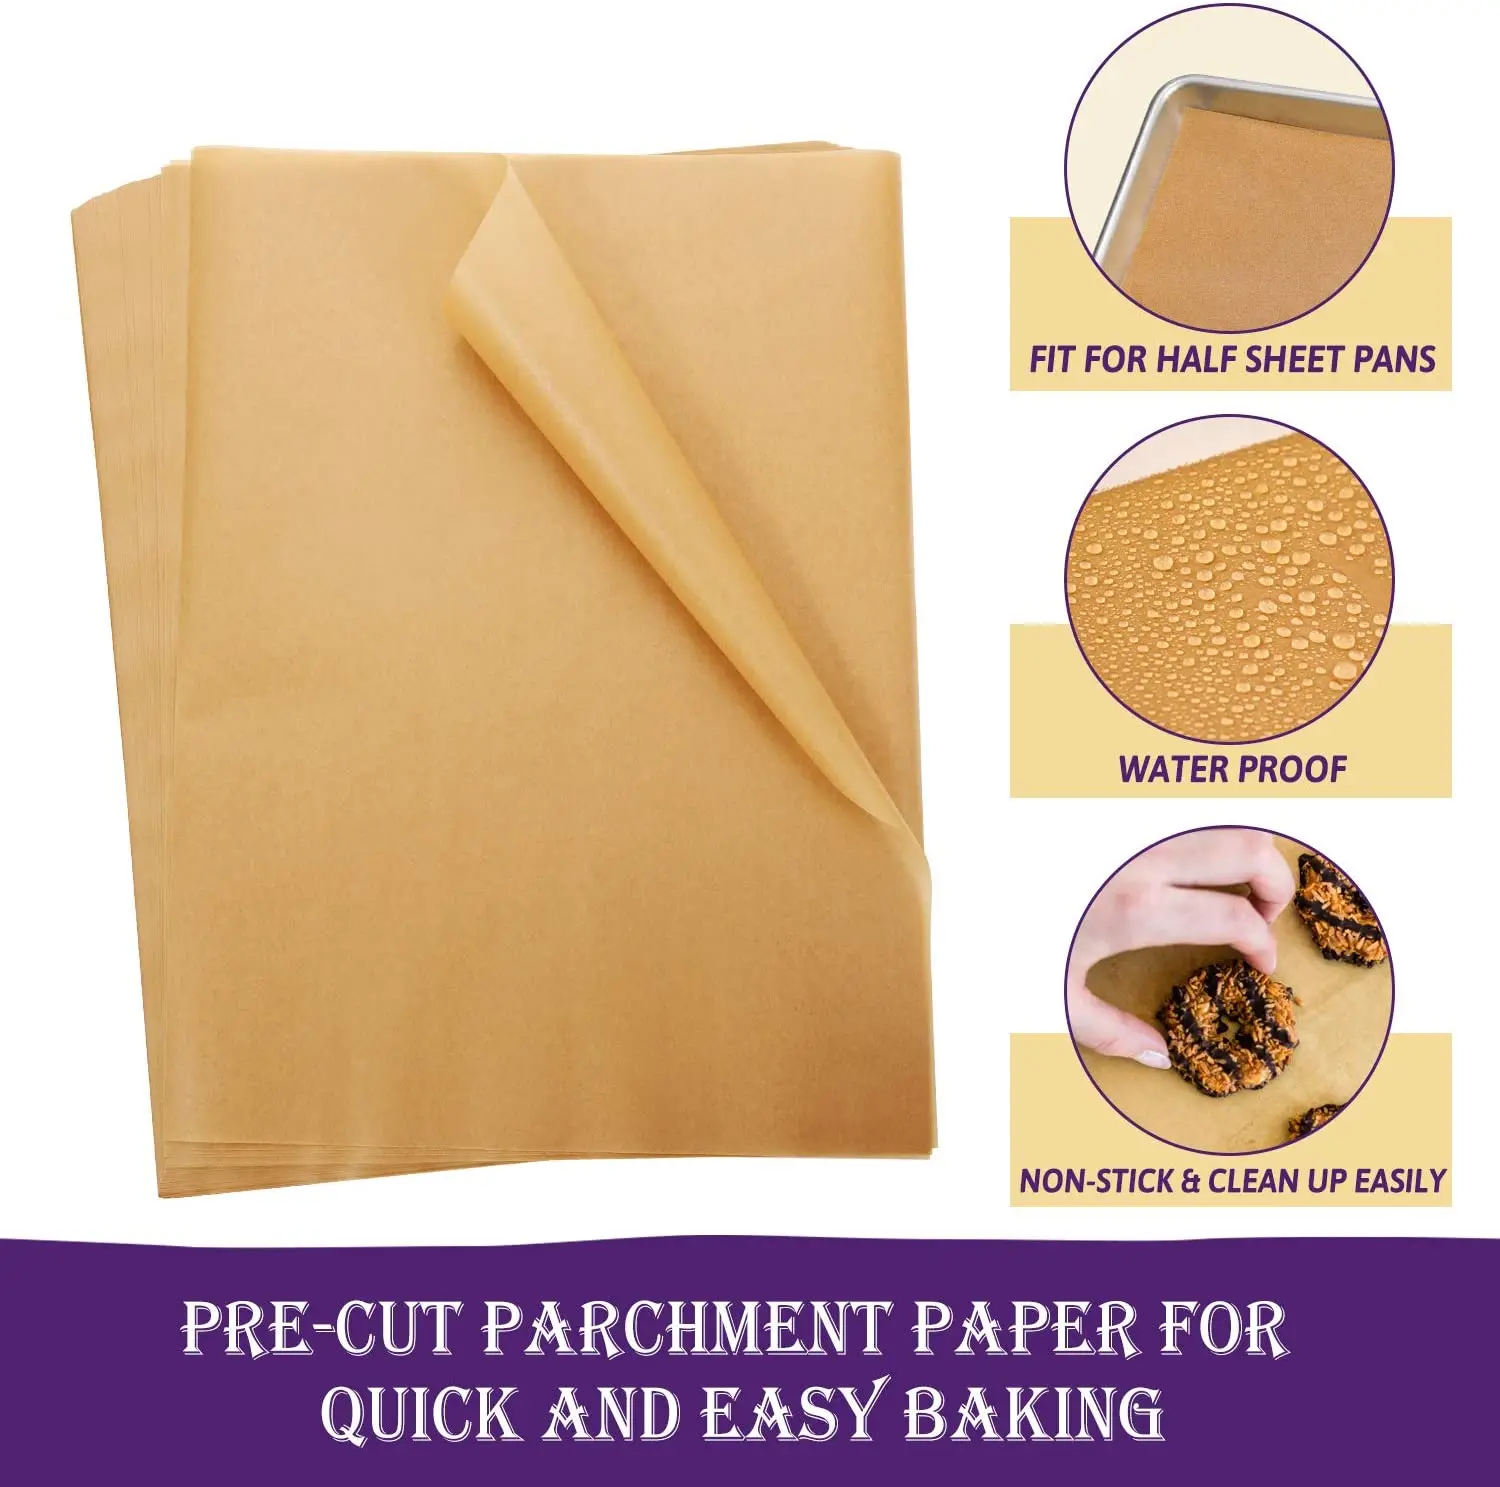 Katbite 500 Pcs Parchment Paper, 16x24 Inches Baking Paper, Heavy Duty & Non-Stick Parchment Paper Sheets, Pre-Cut Parchment Paper Baking Sheets Is